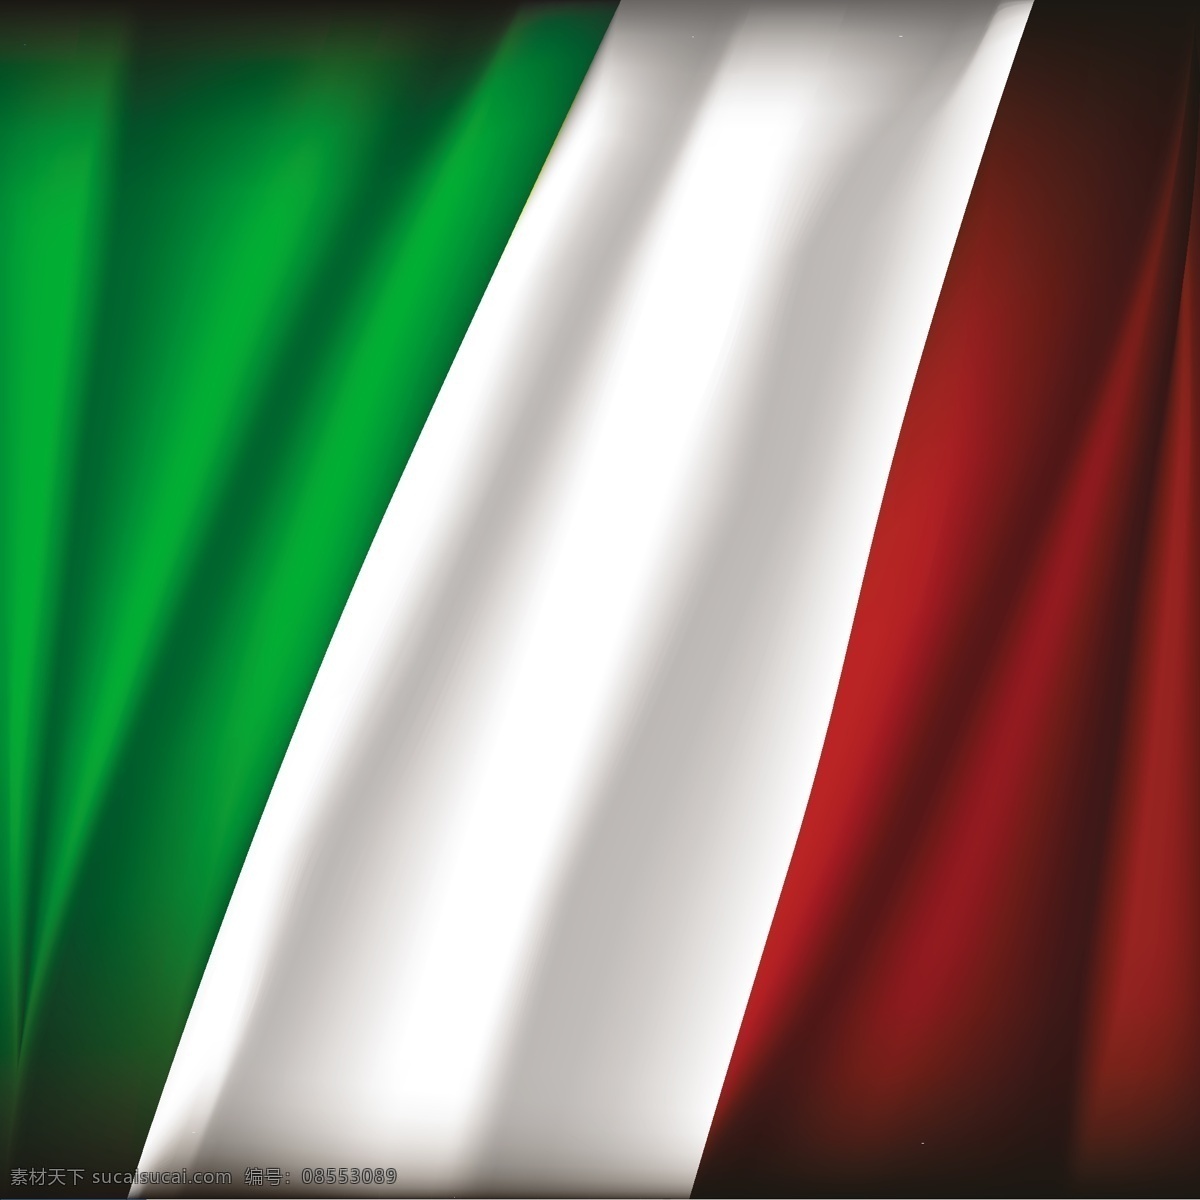 意大利设计 意大利国旗 意大利 意大利图标 意大利标志 意大利文化 意大利风情 标志图标 其他图标